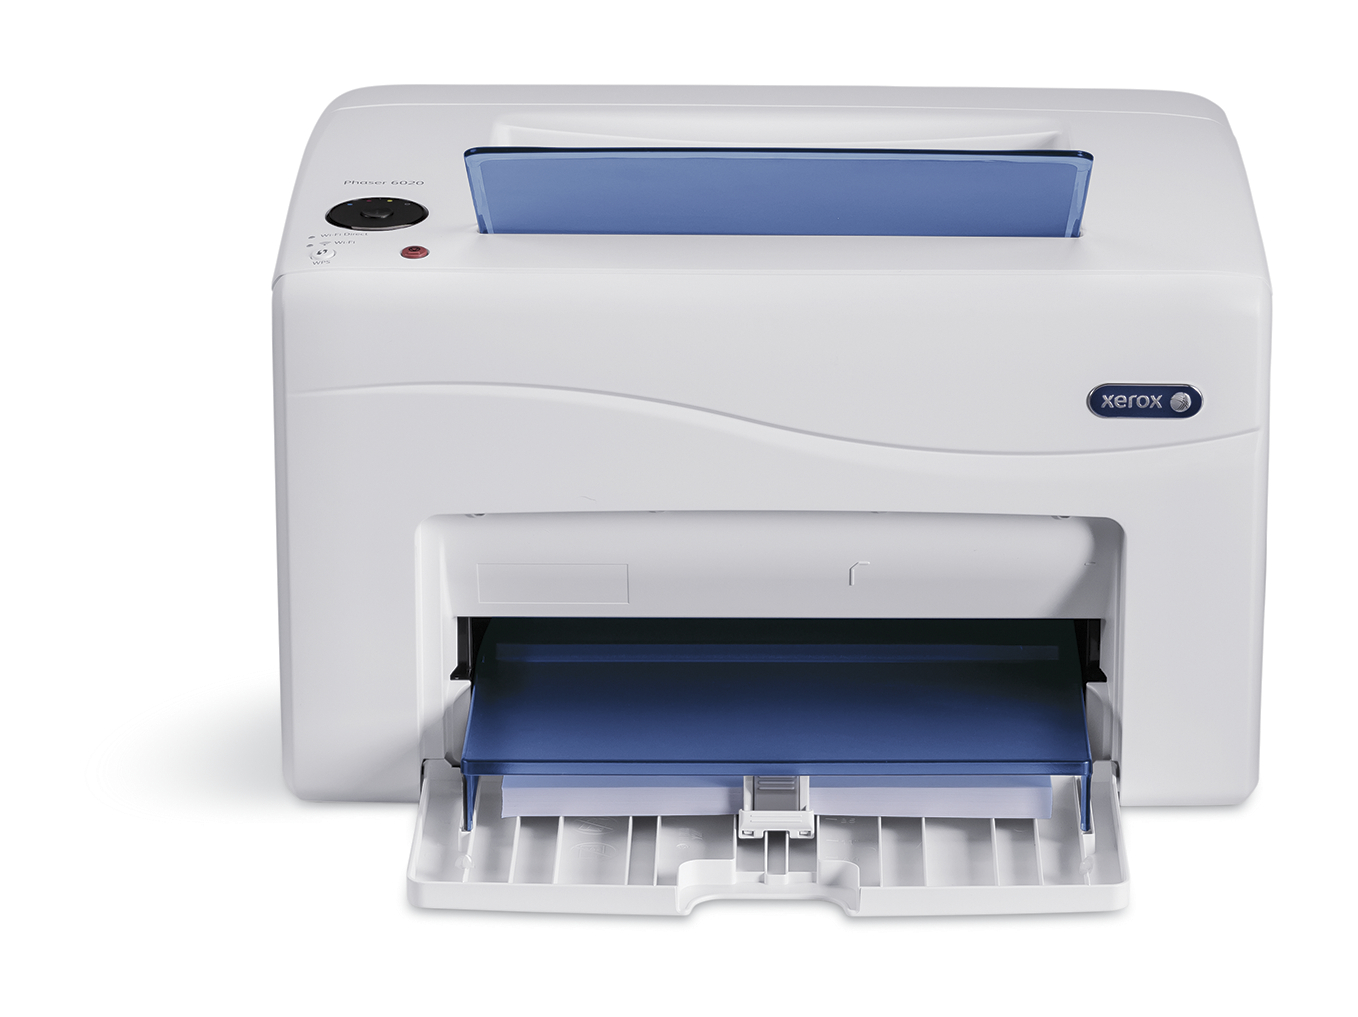 impresora láser color multifunción